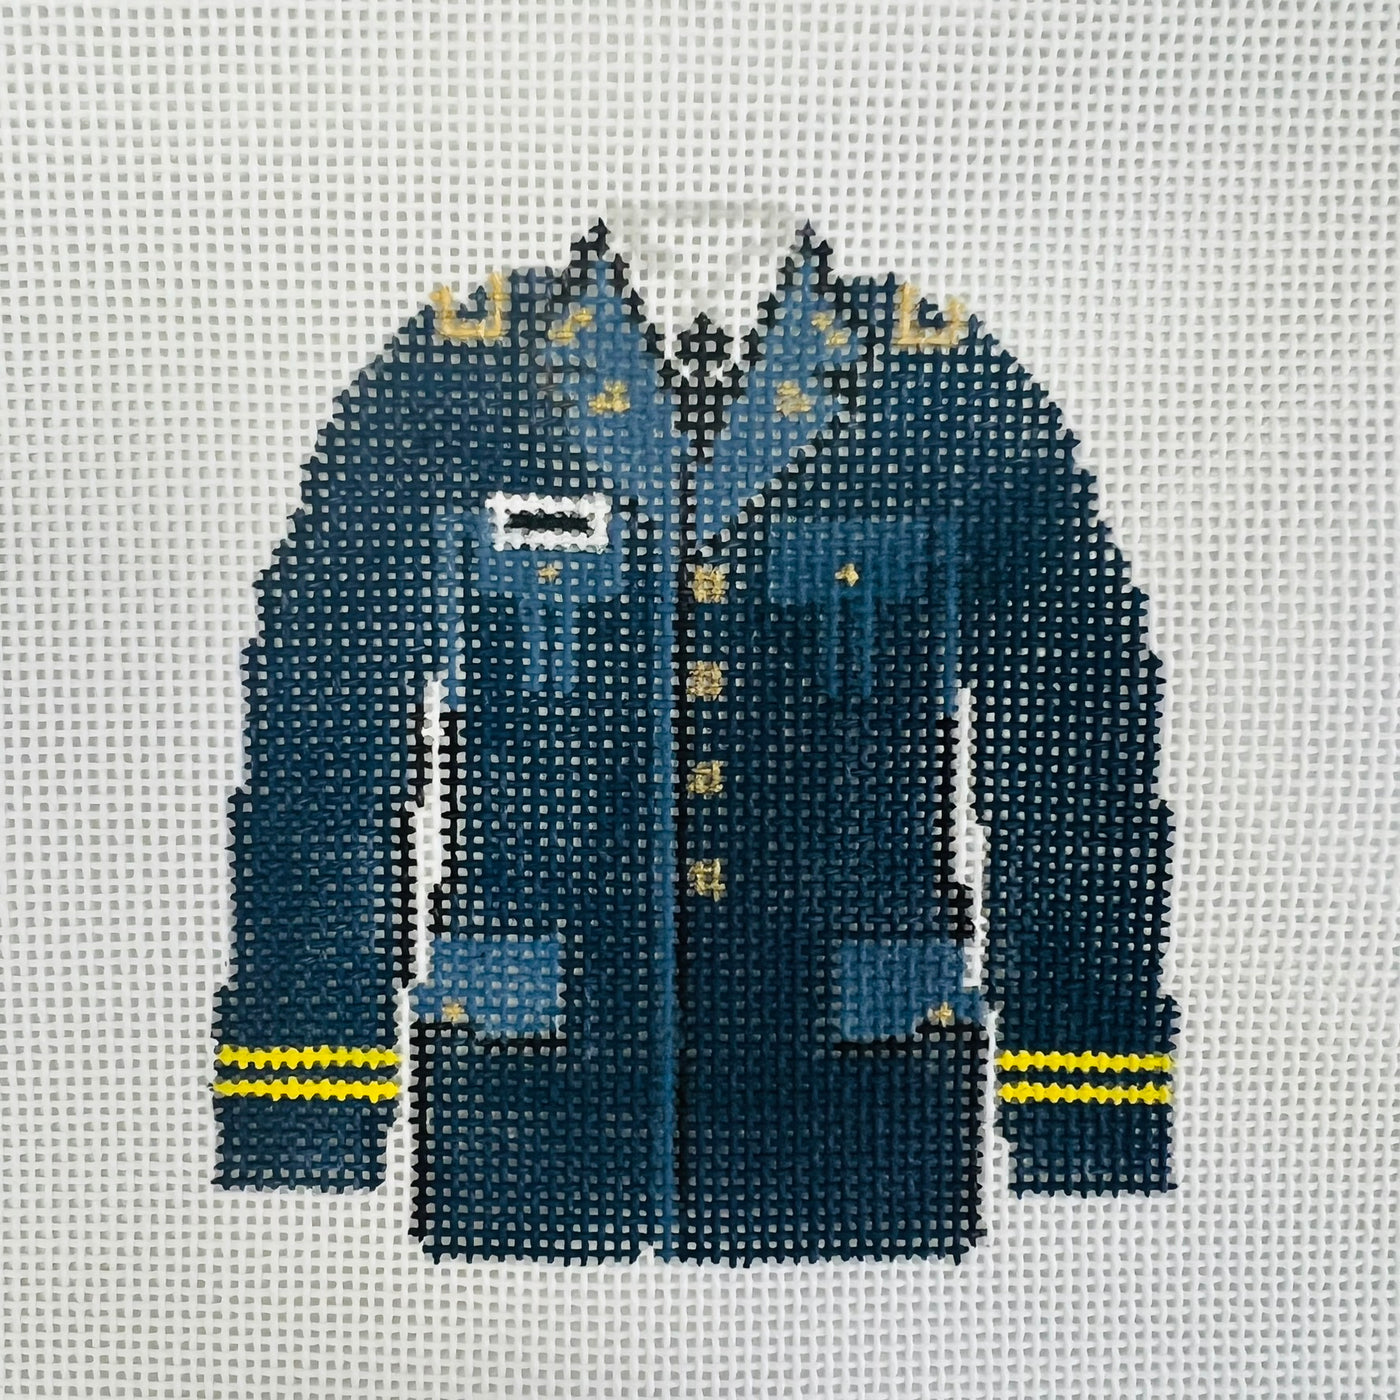 Army Dress Uniform Ornament Needlepoint Canvas